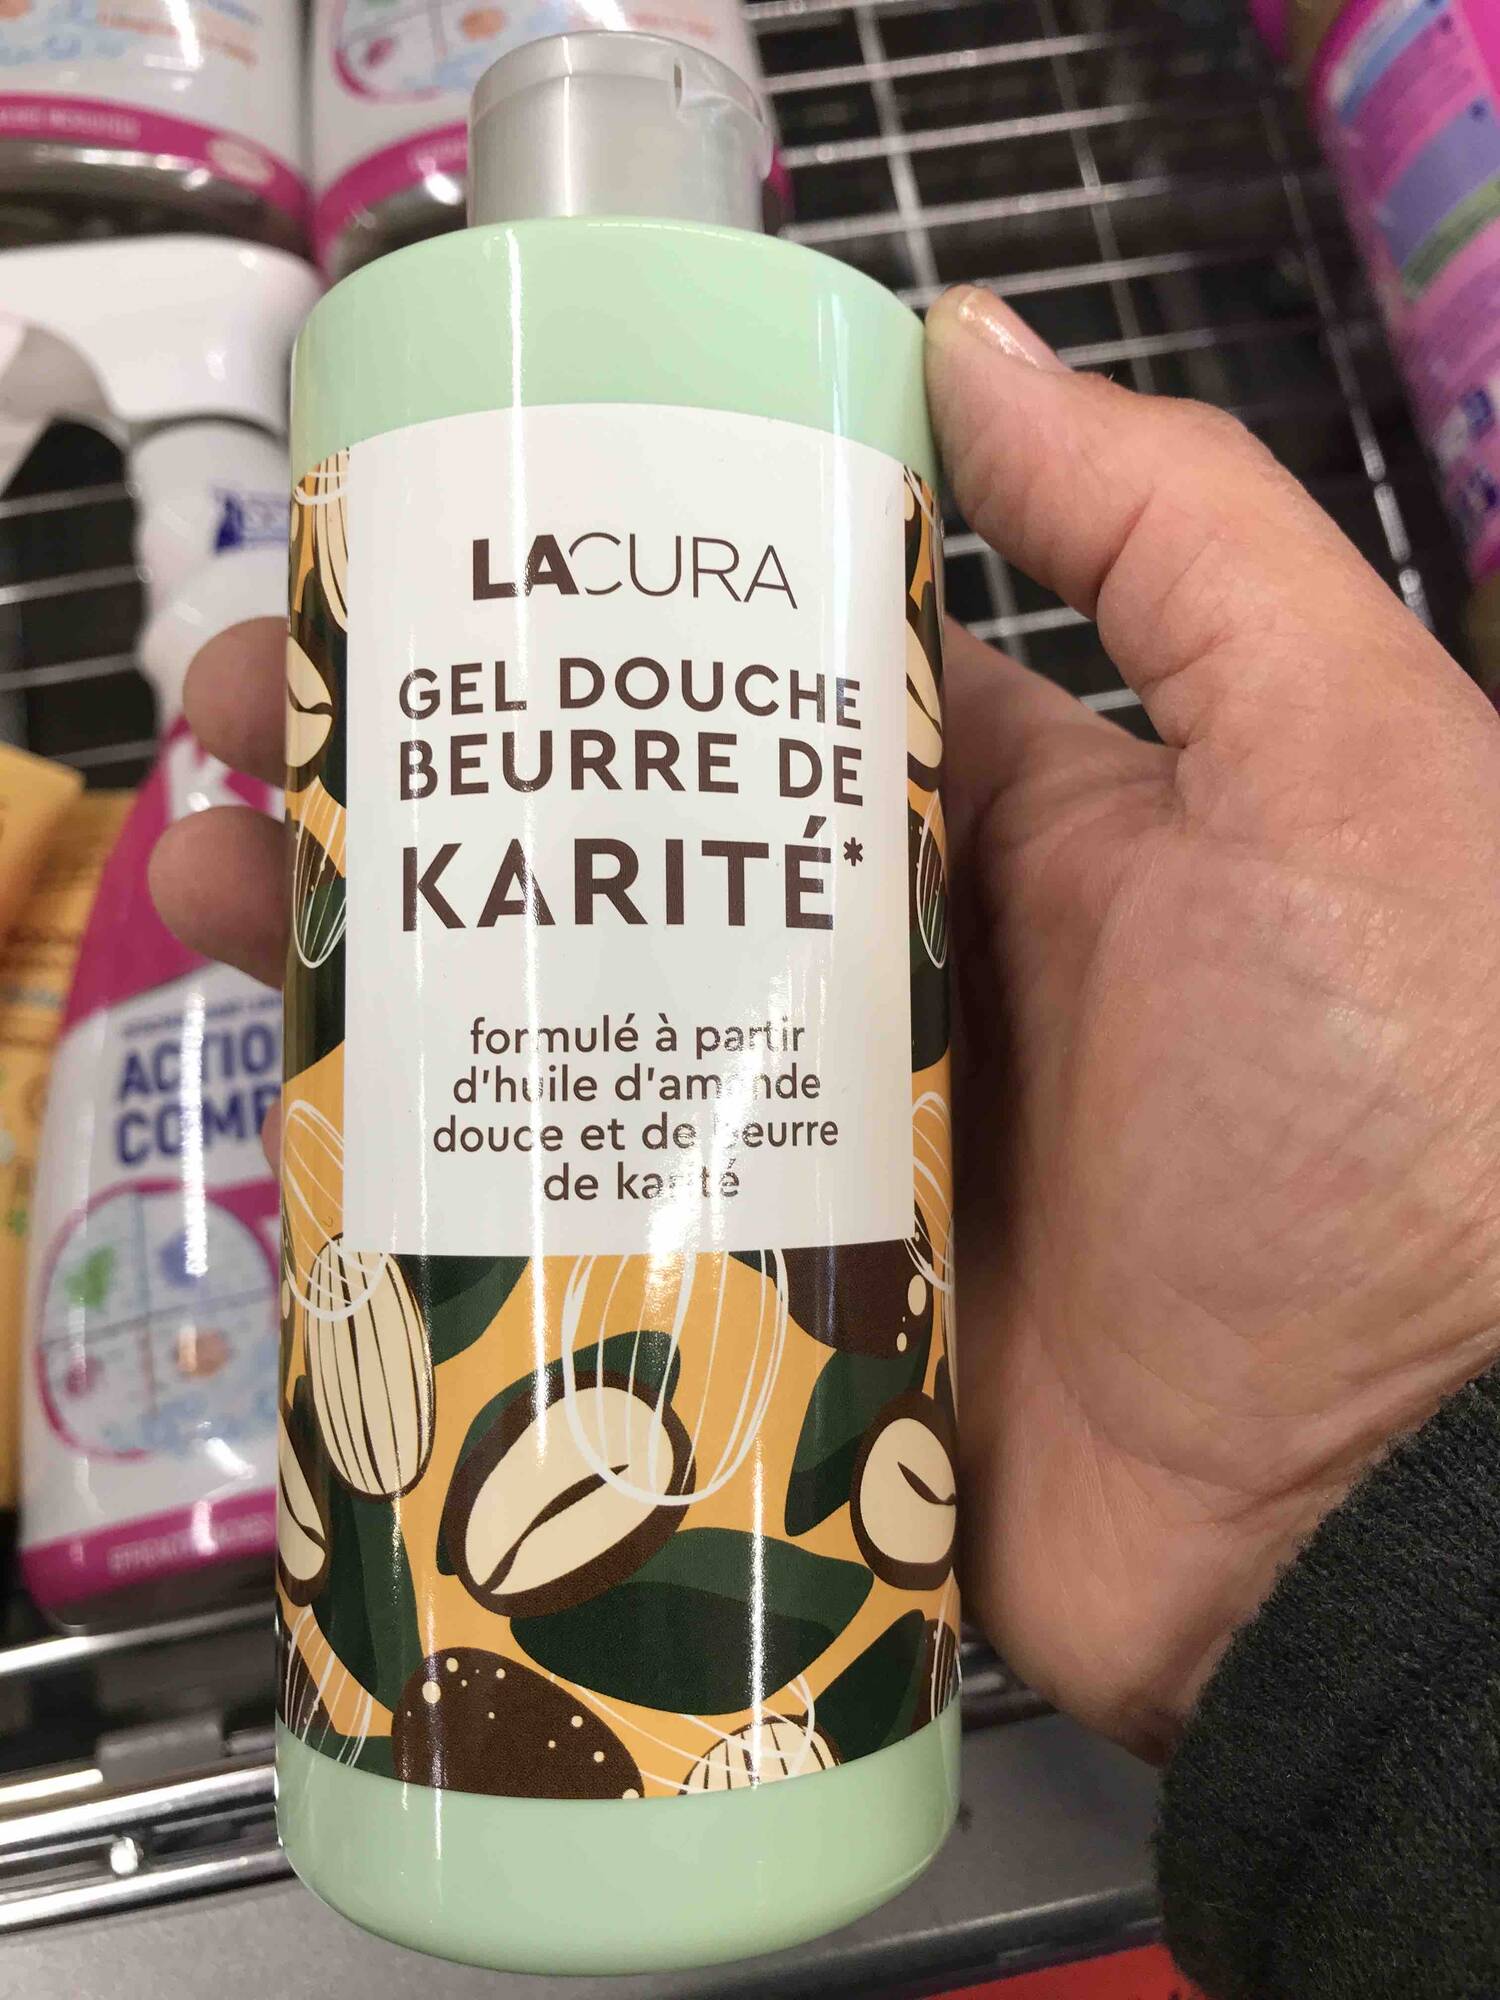 LACURA - Gel douche beurre de karité